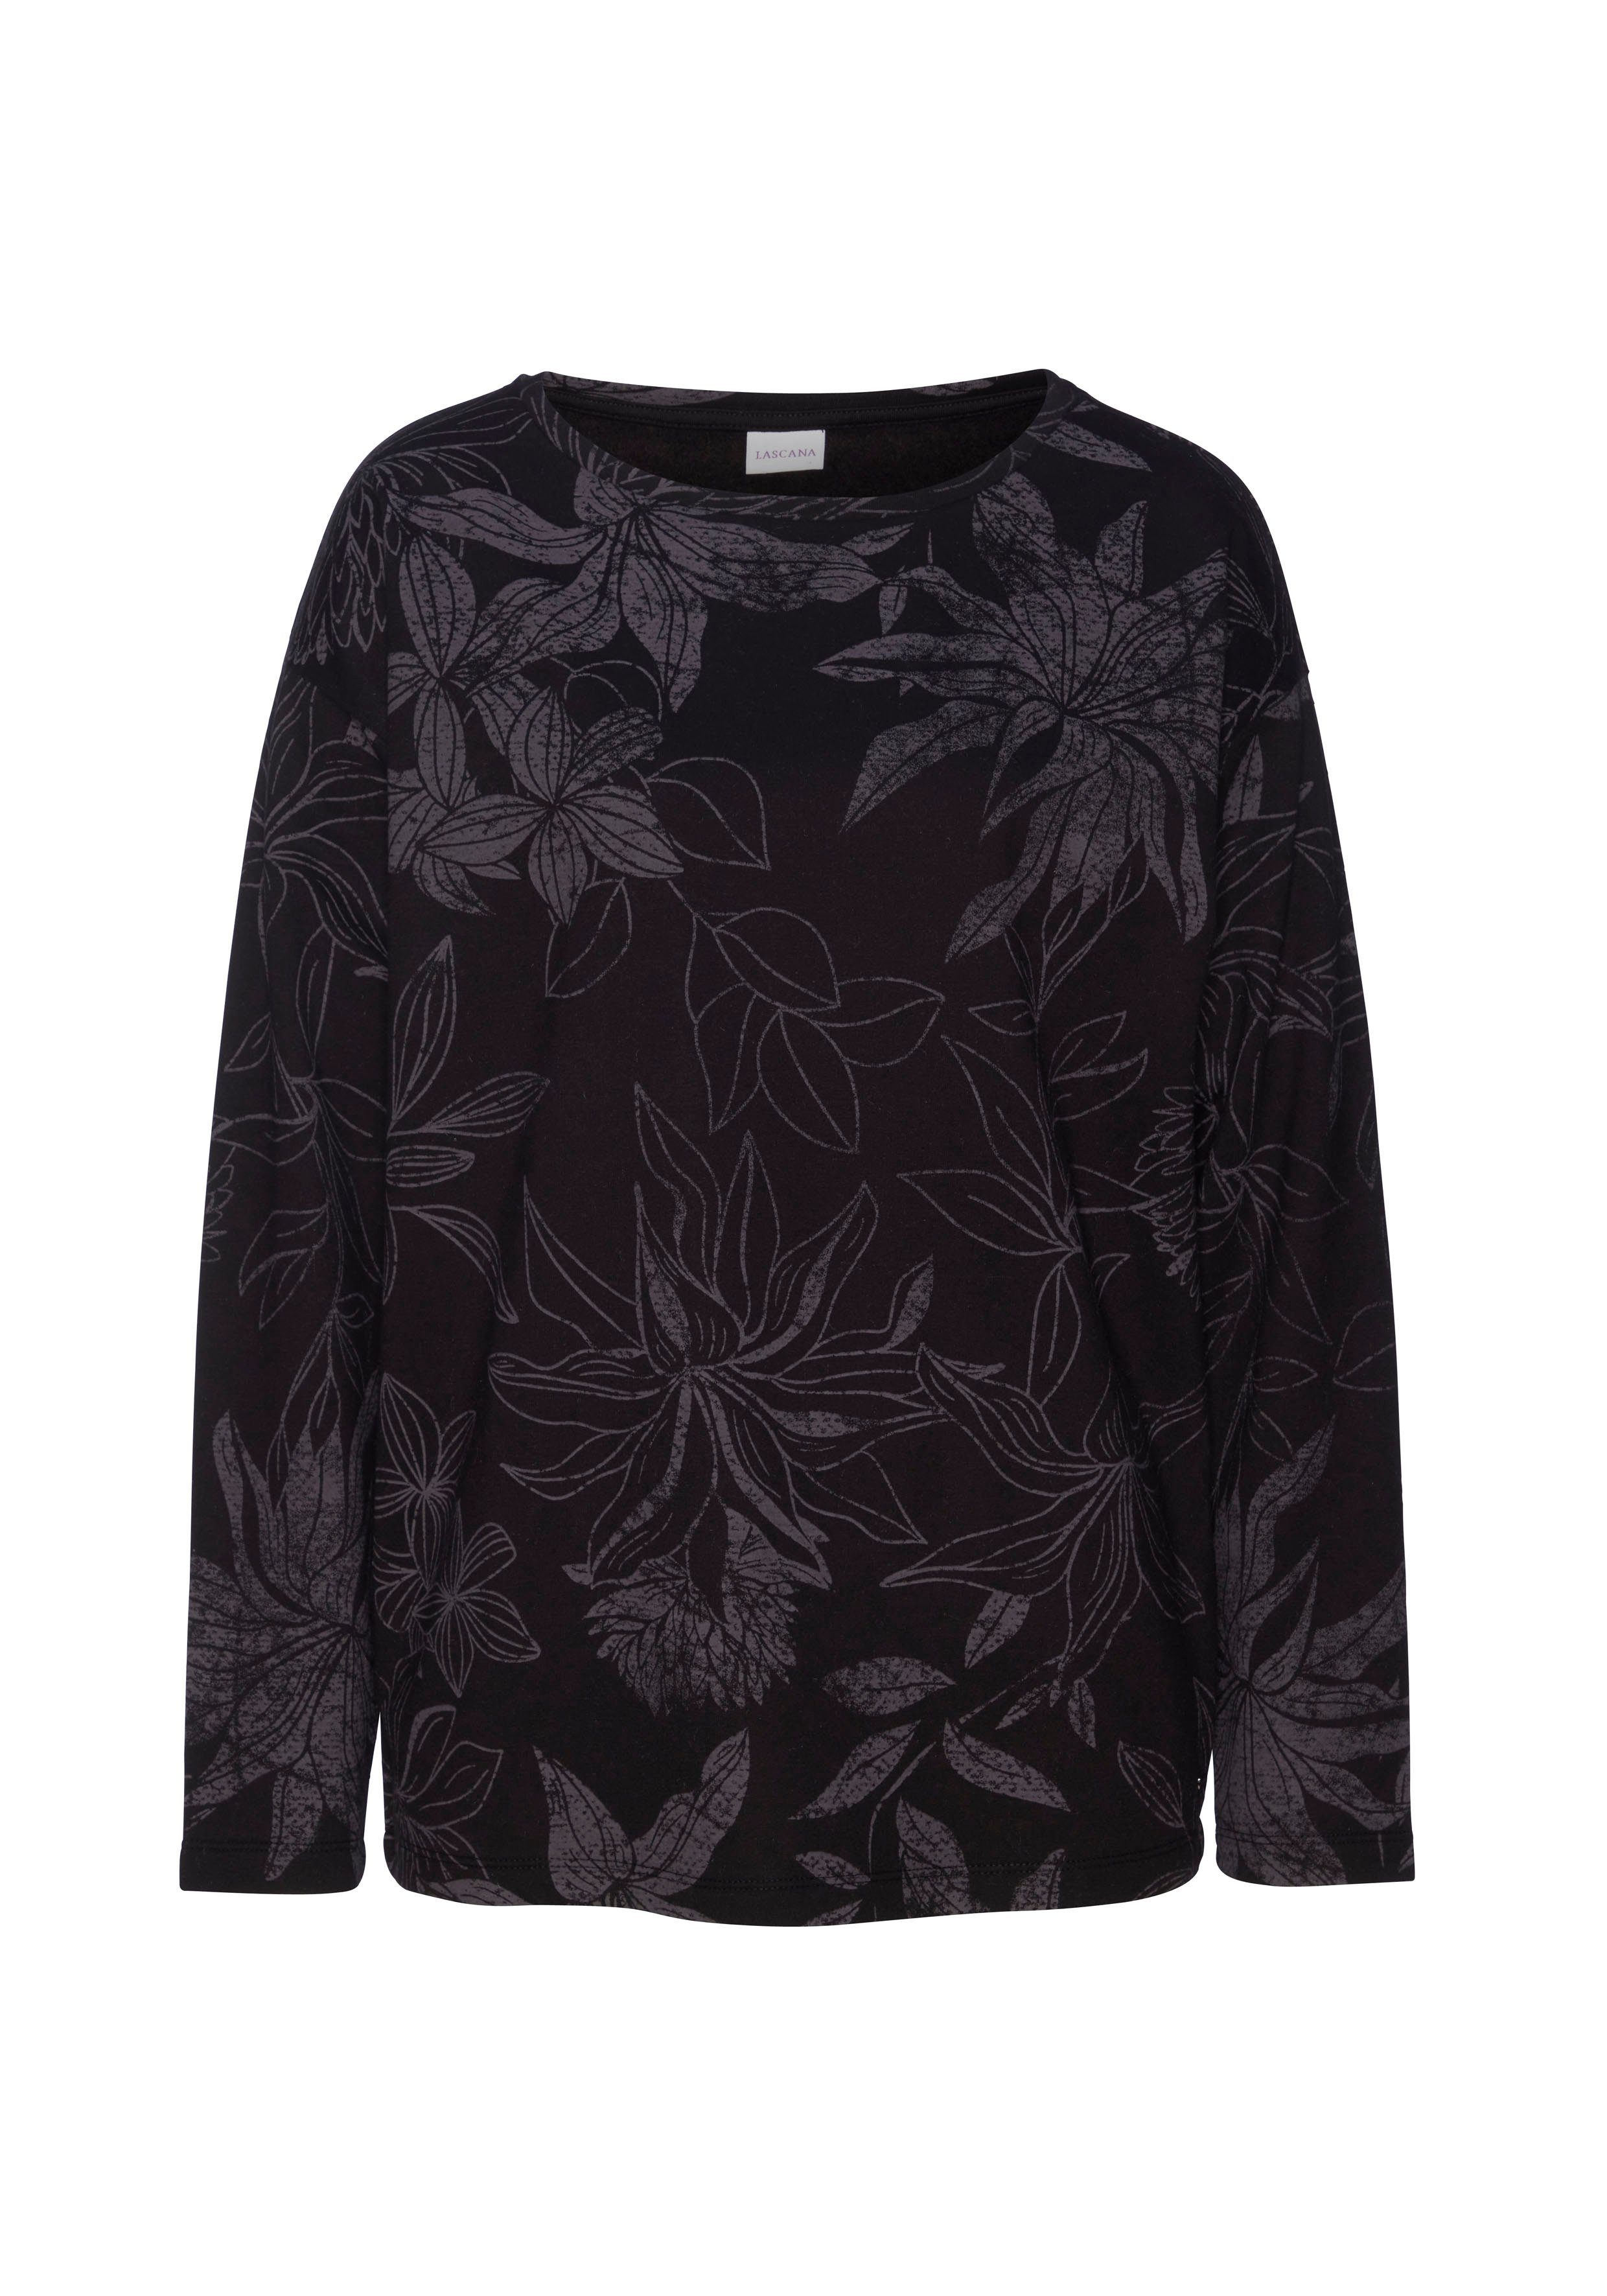 Loungeanzug schwarz-gemustert Alloverdruck, Sweatshirt mit floralem LASCANA Loungewear,